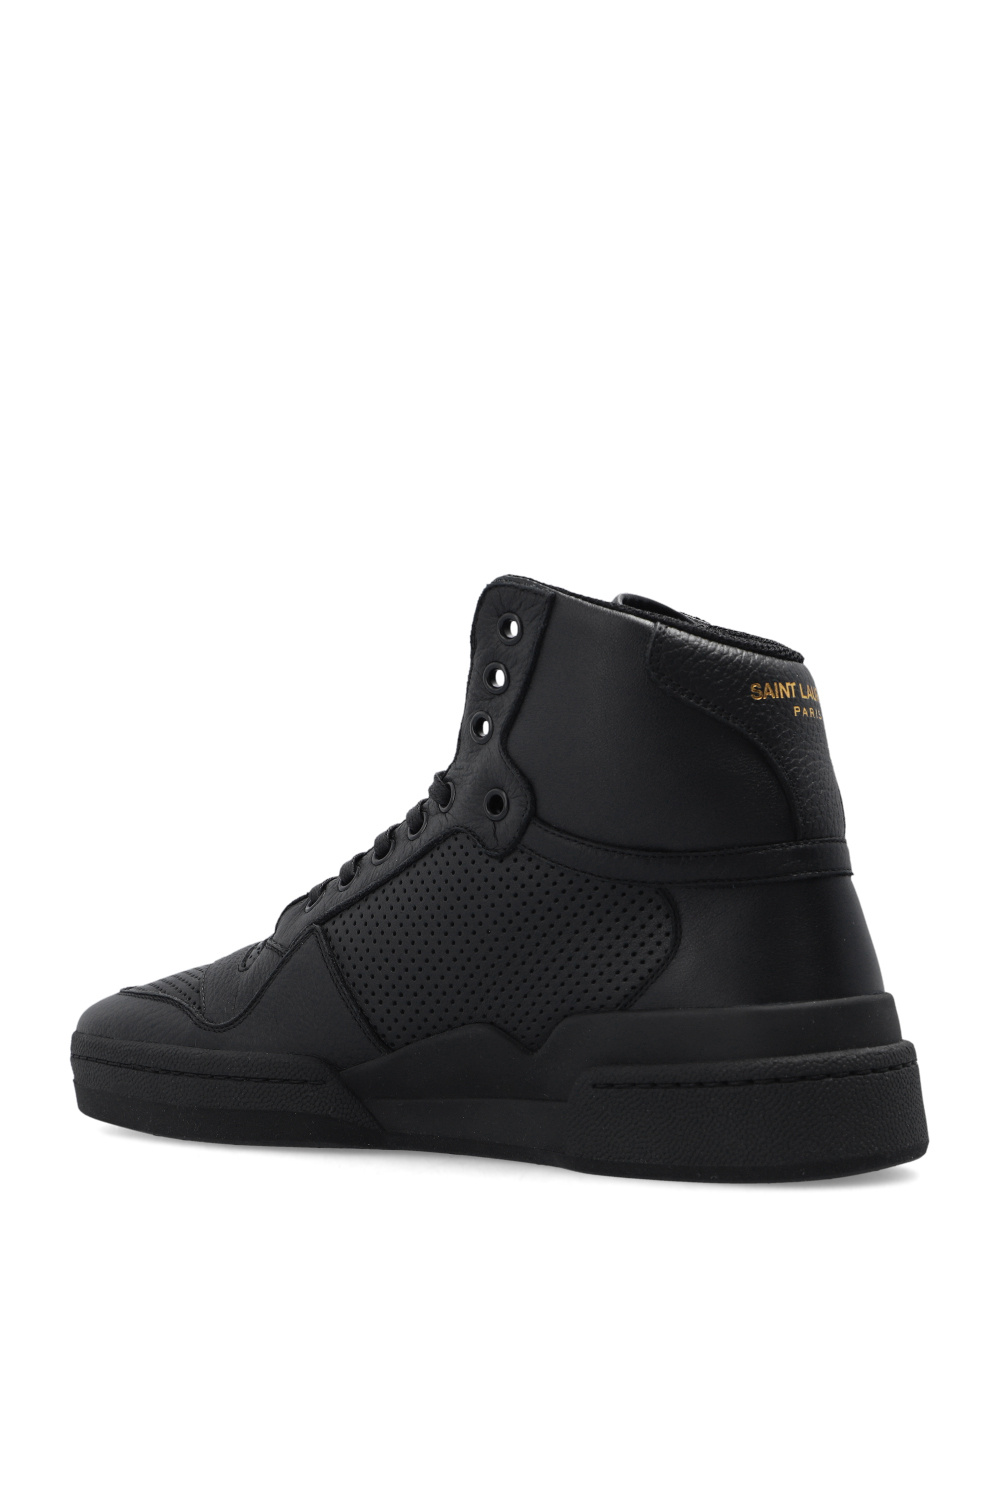 Saint Laurent ‘SL24’ high-top sneakers